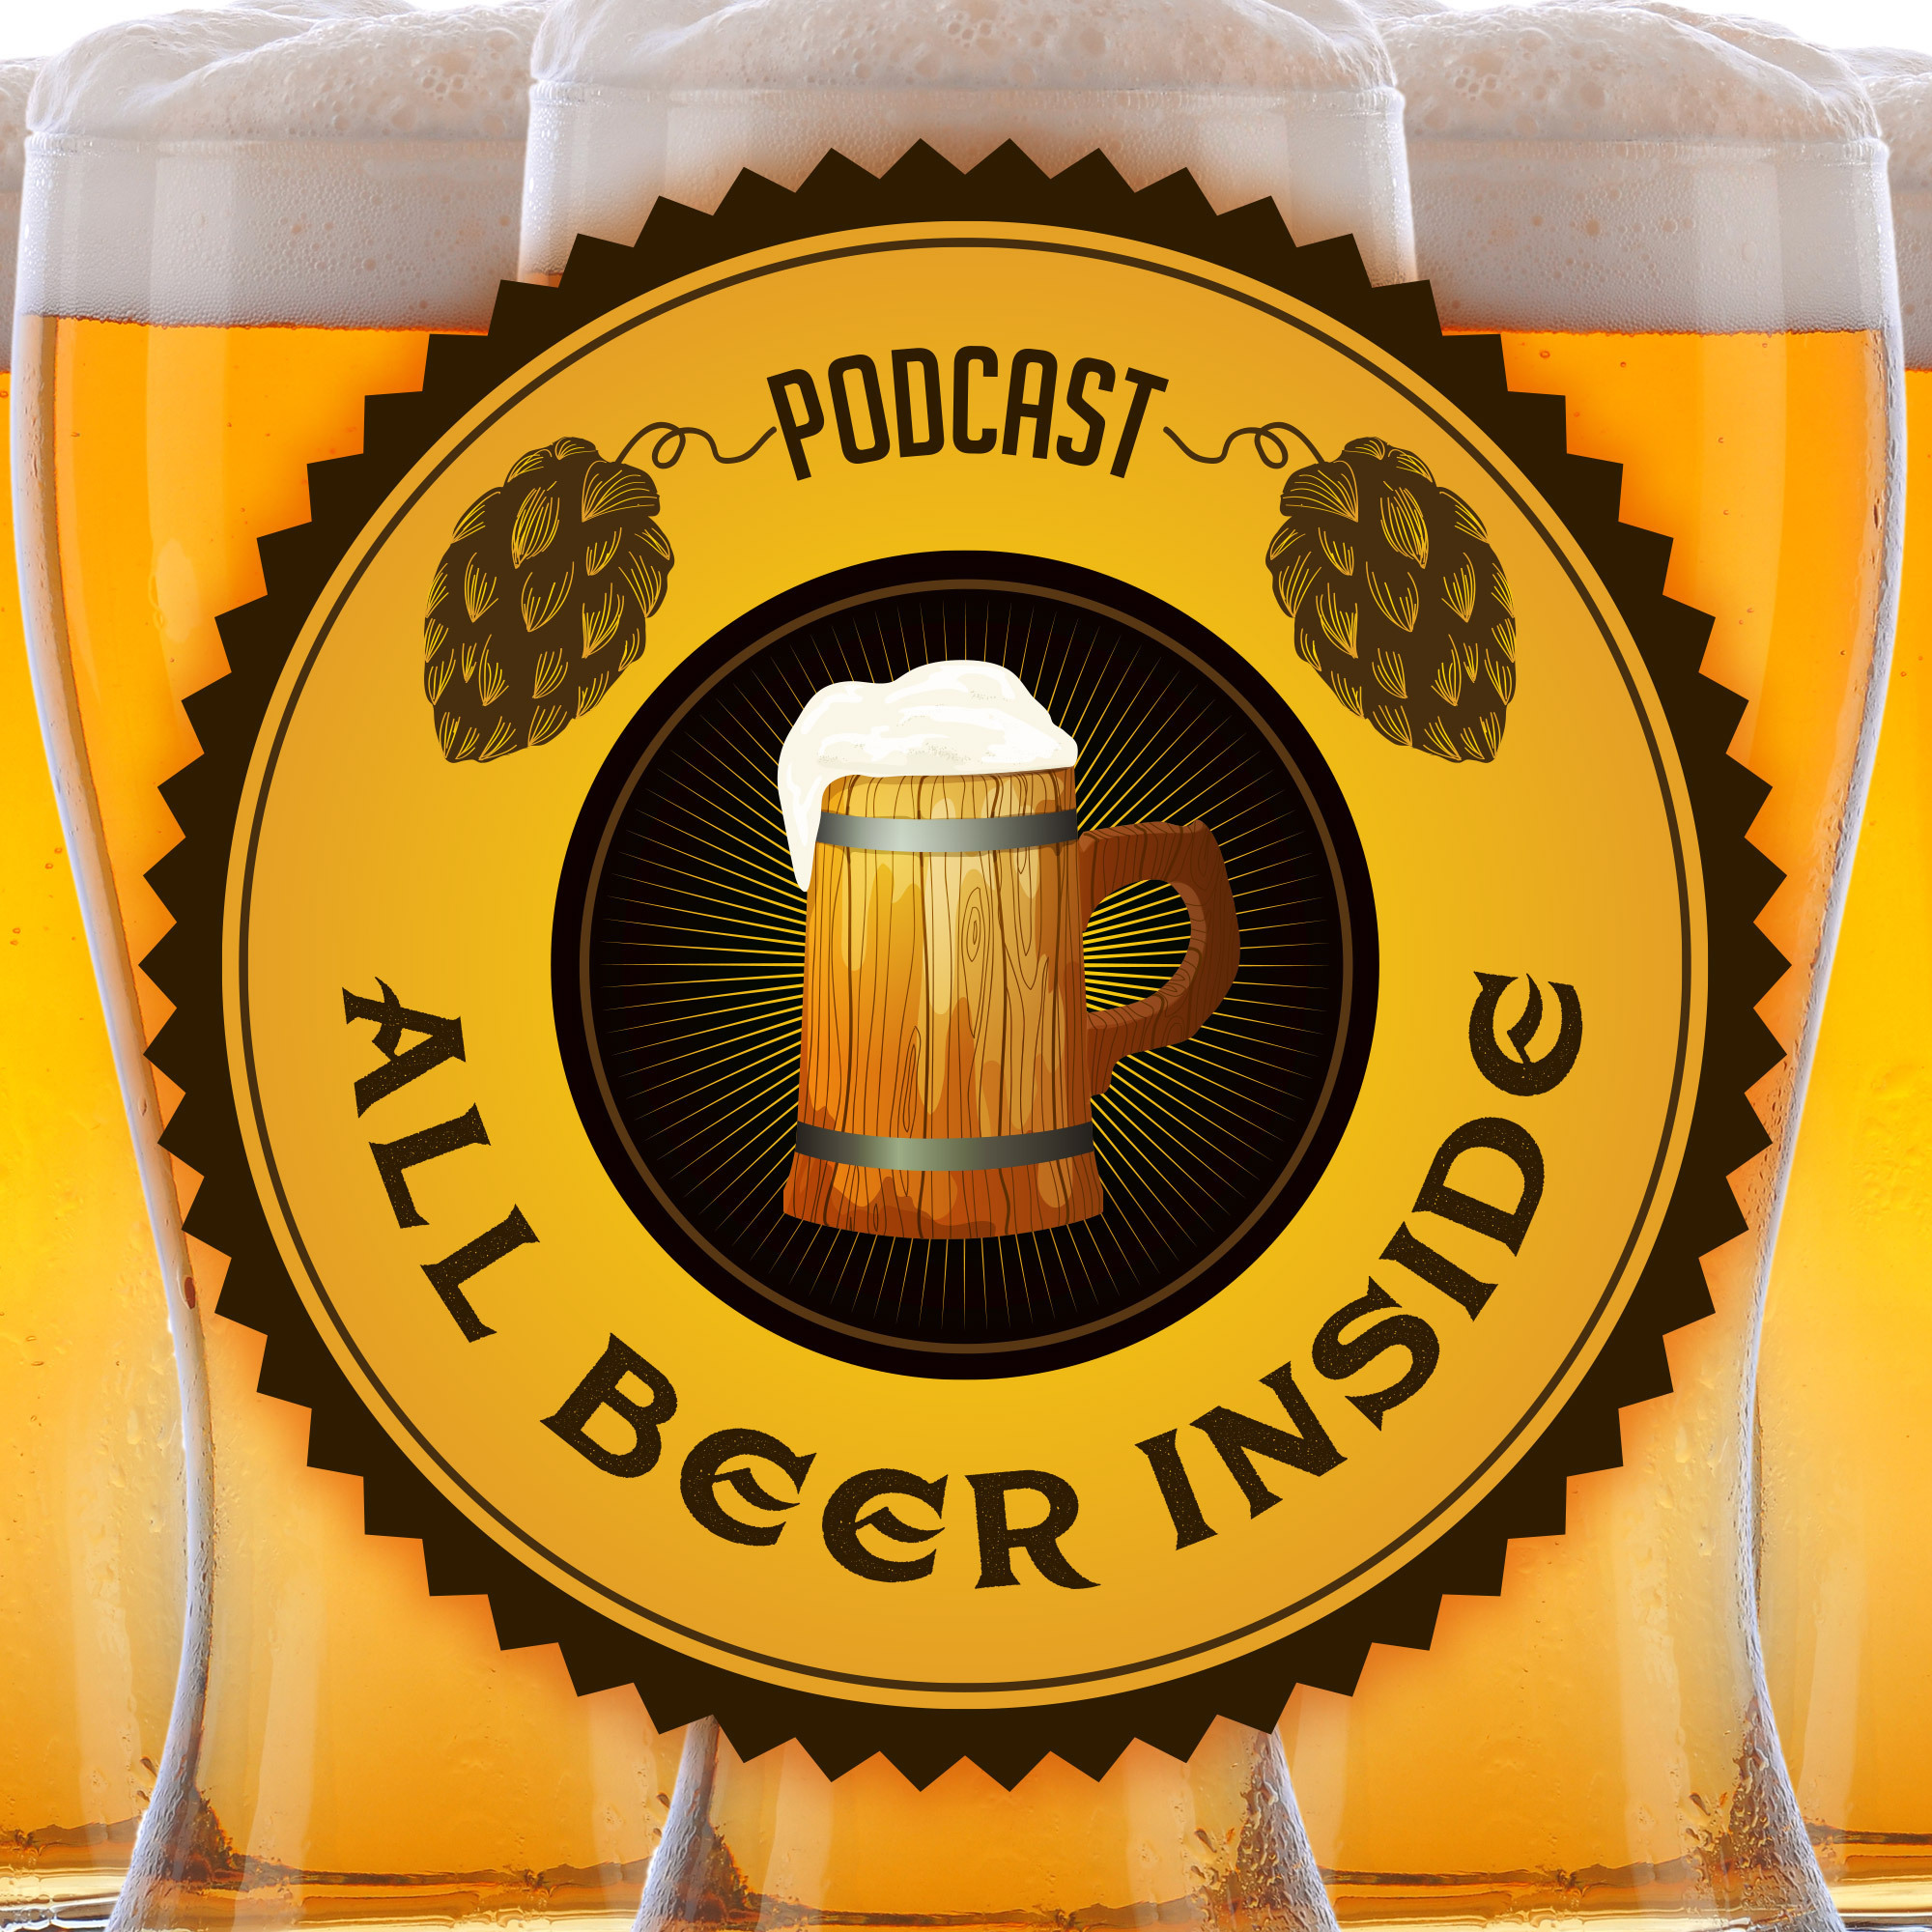 All Beer Inside Episode 24 - I got a case of the JR’s